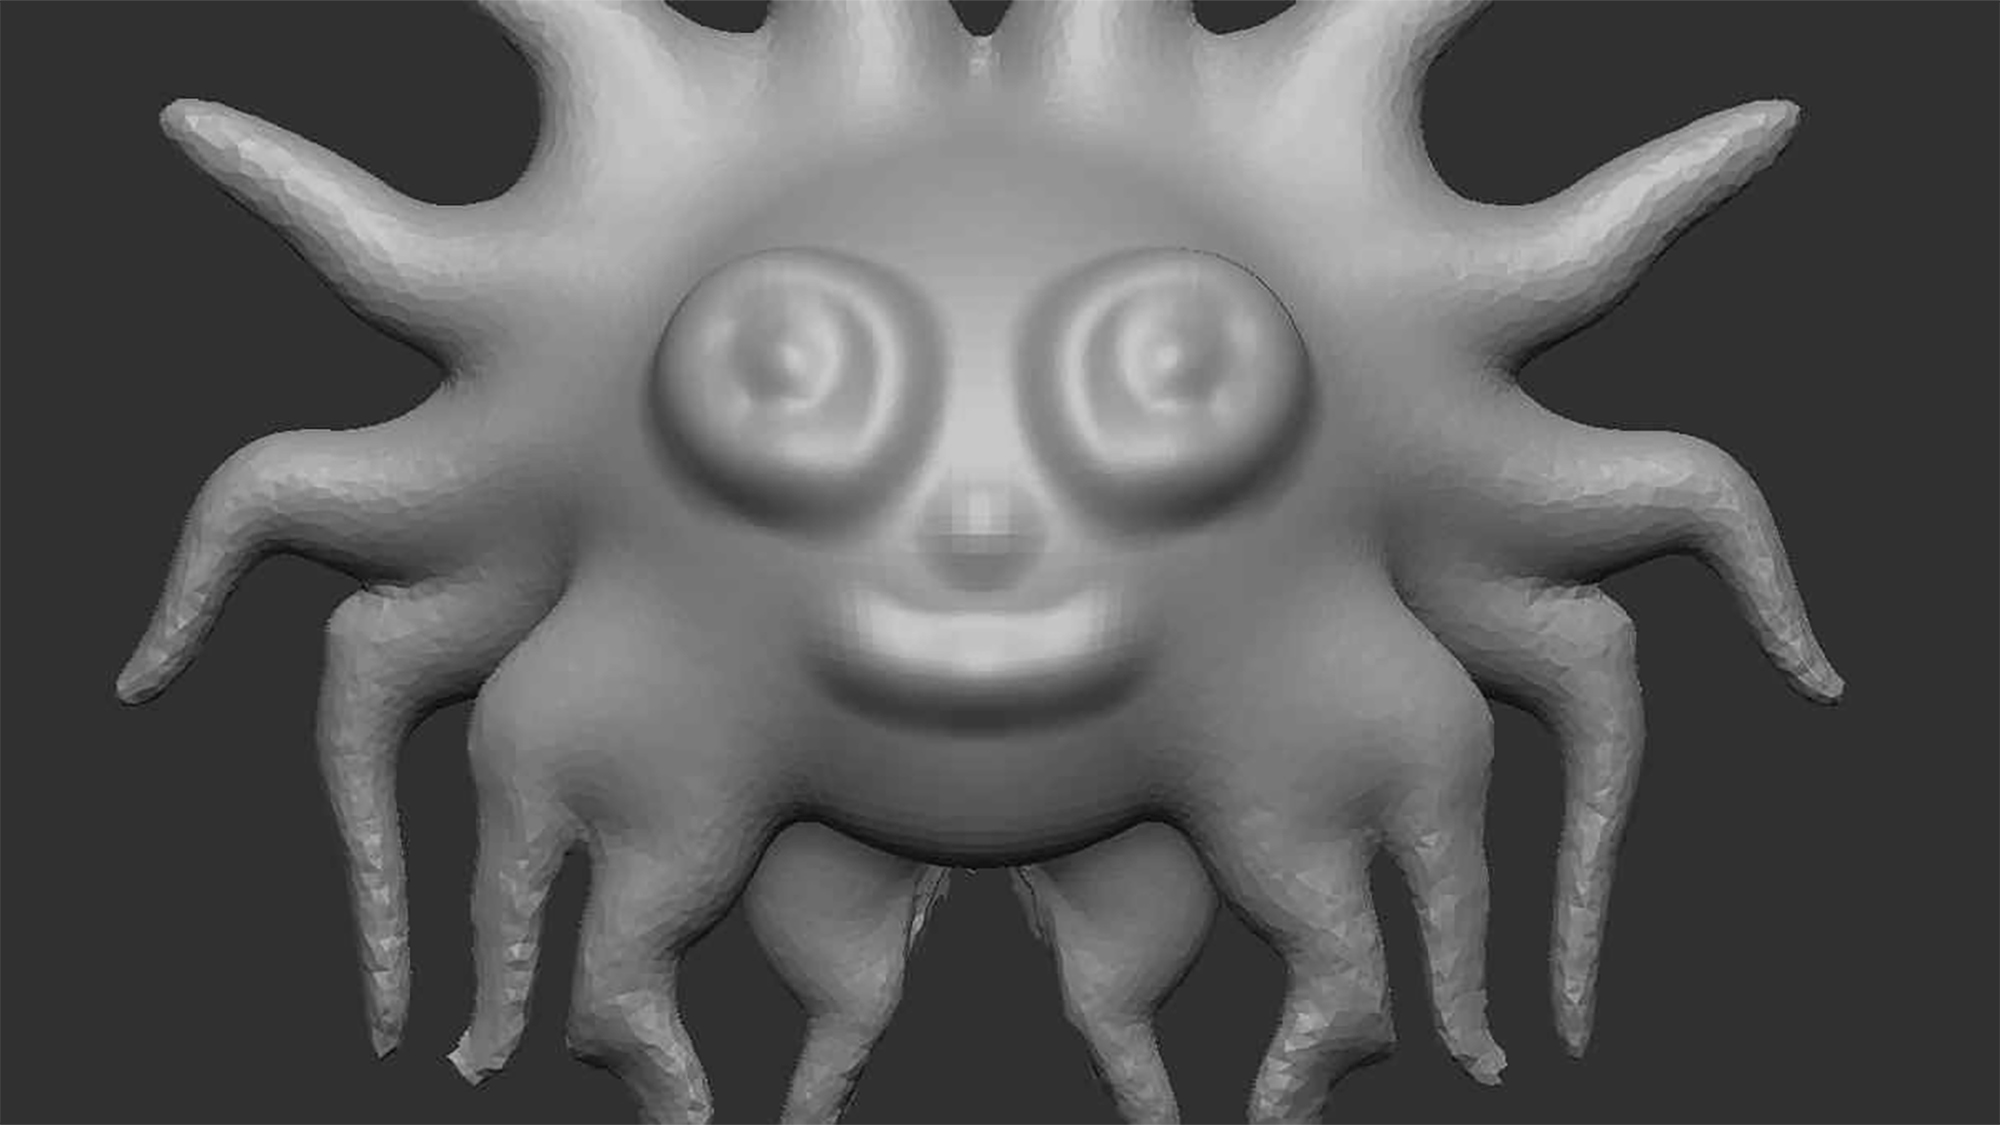 Das 3D-Rendering einer Fantasie-Kreatur lächelt. Die Tentakel rund um das freundliche Gesicht erinnern an die Darstellung einer Sonne.